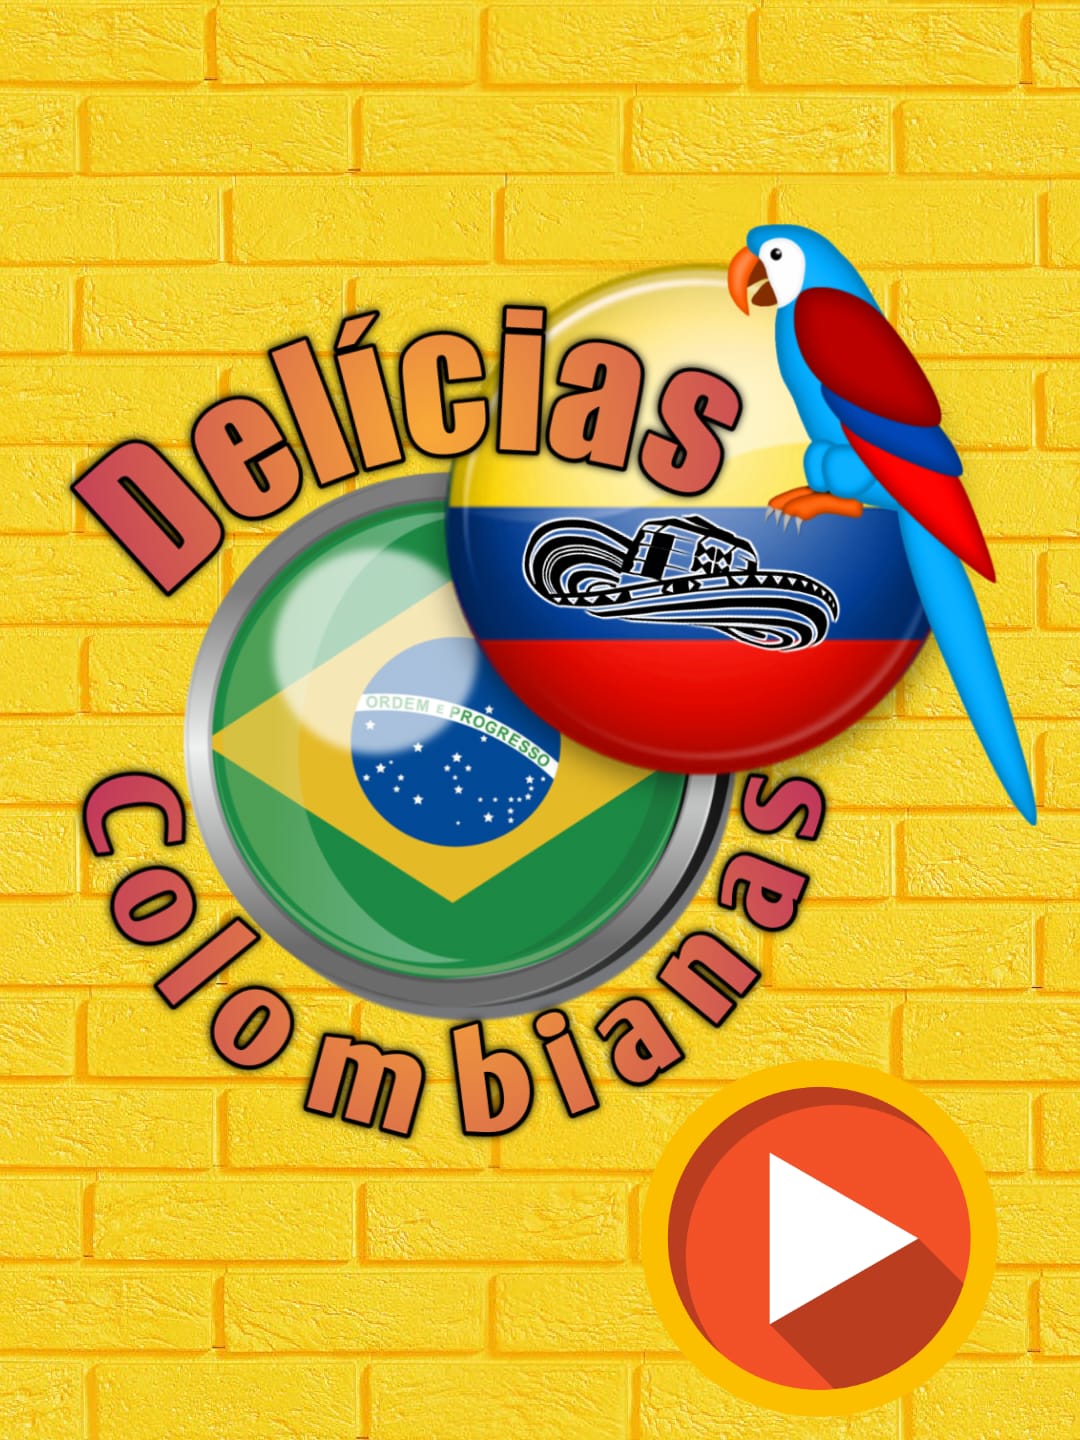 Play Delicias